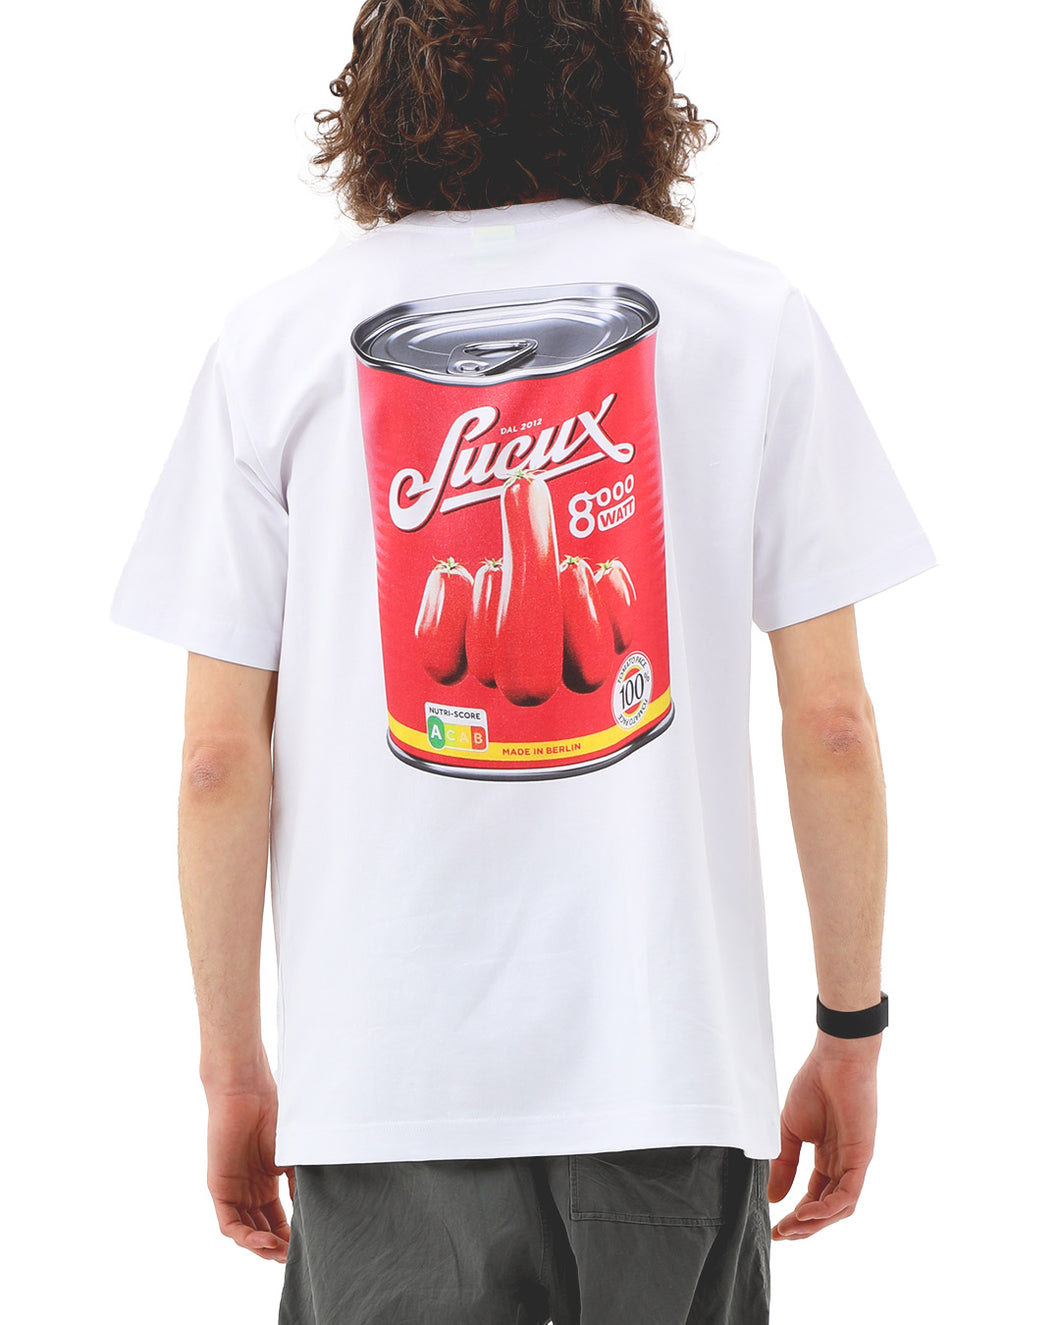 Sucux x 8000watt Pomodori Shirt